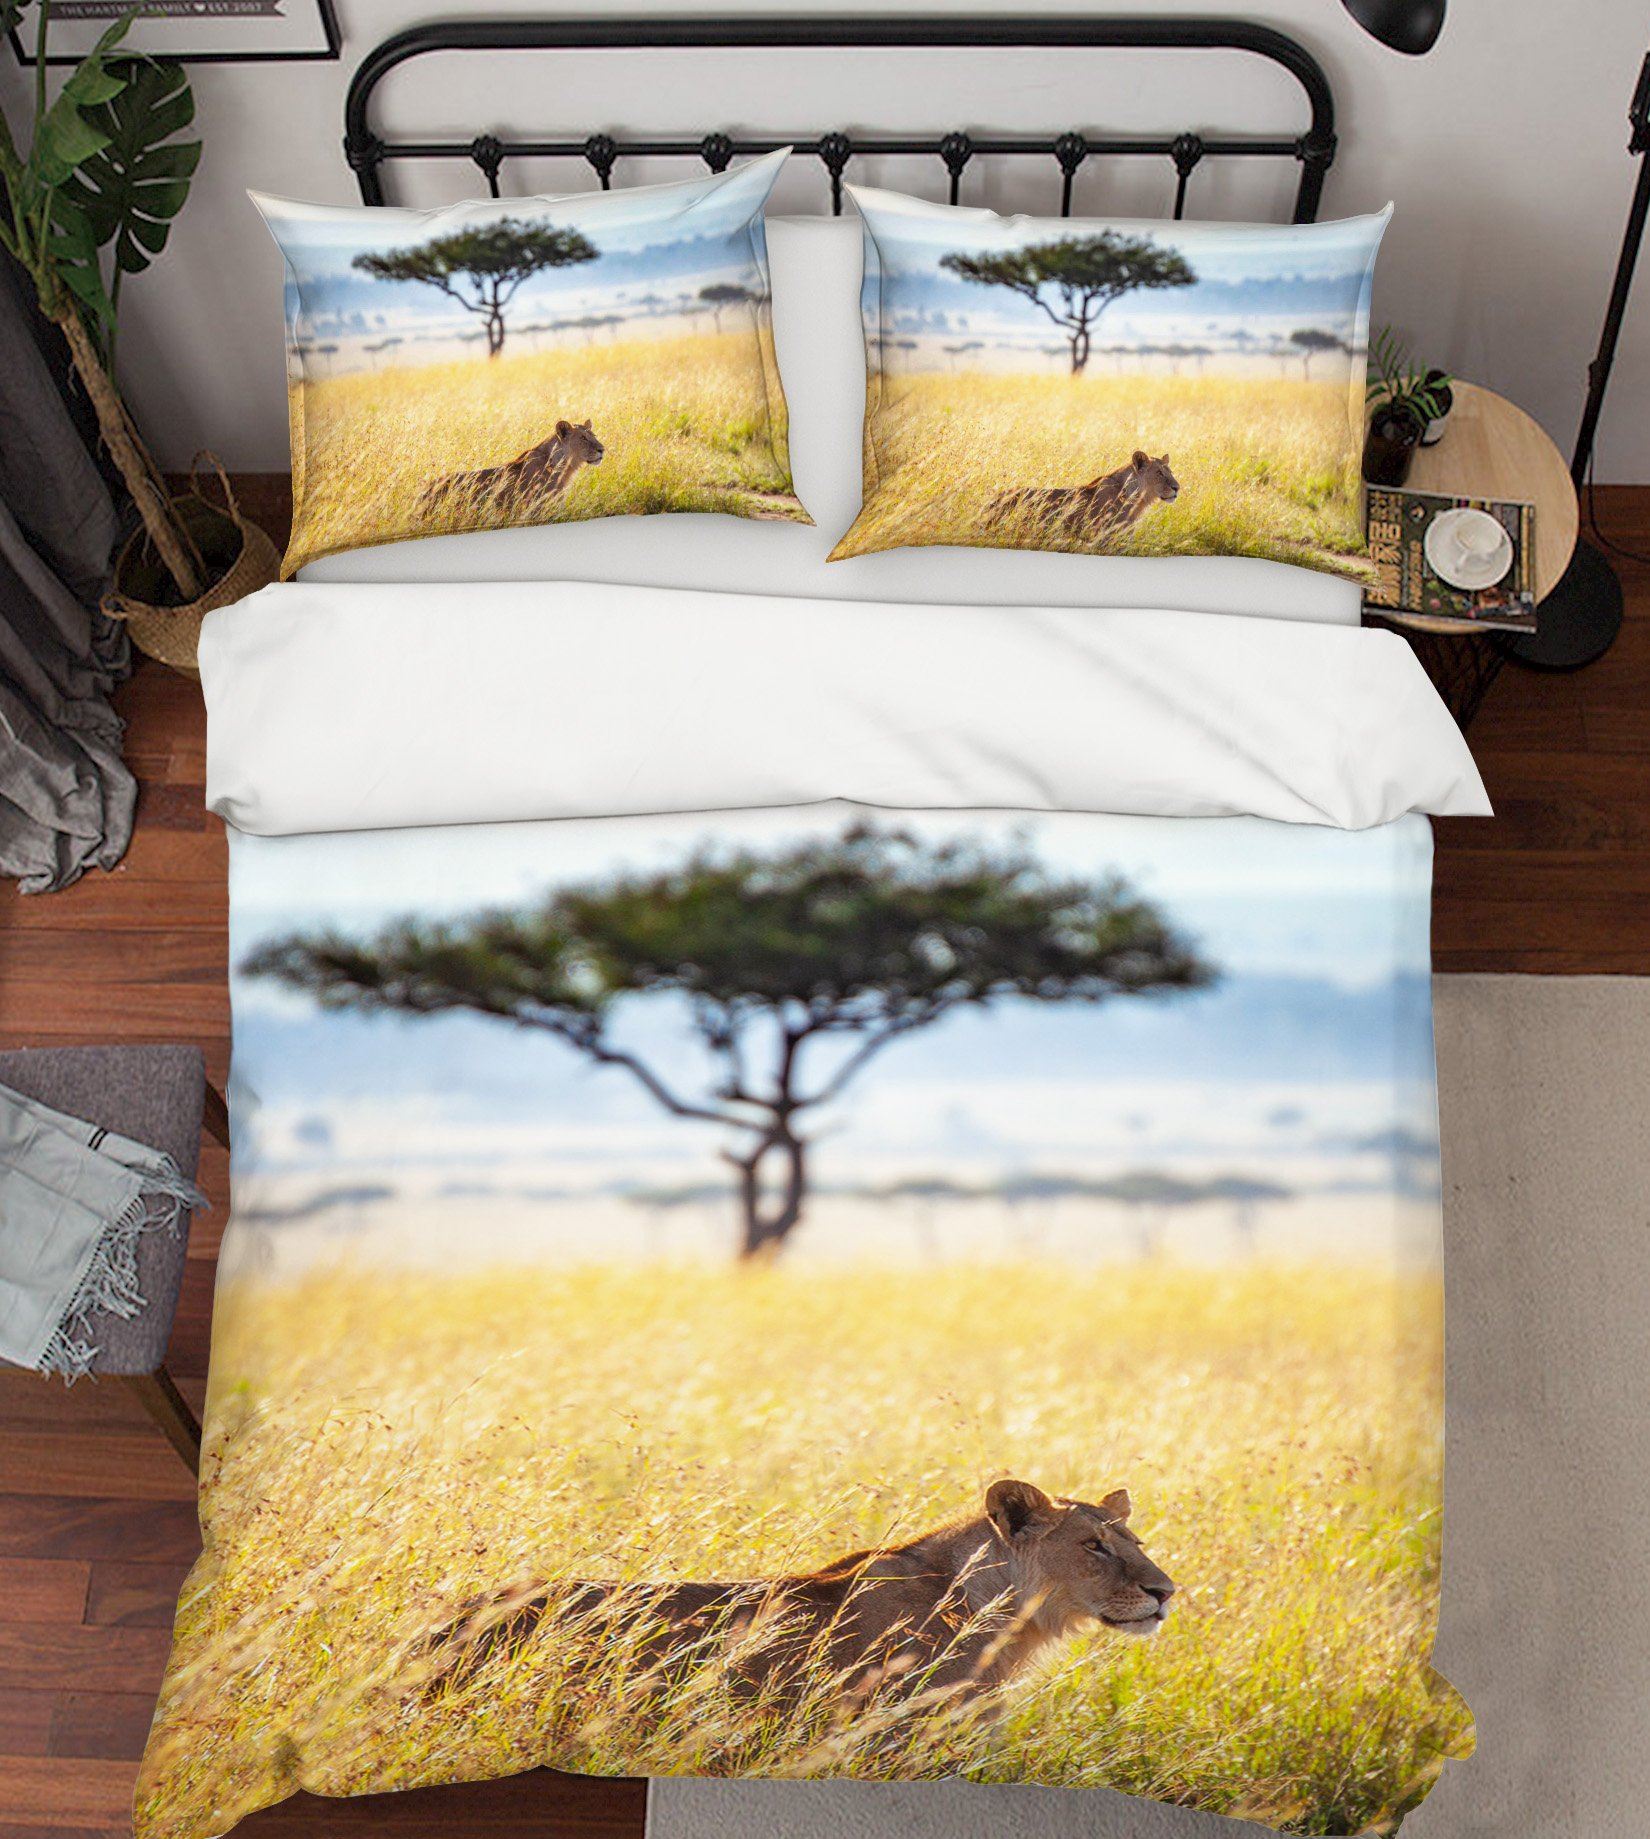 3D Prairie Cheetah 1989 Bed Pillowcases Quilt Quiet Covers AJ Creativity Home 